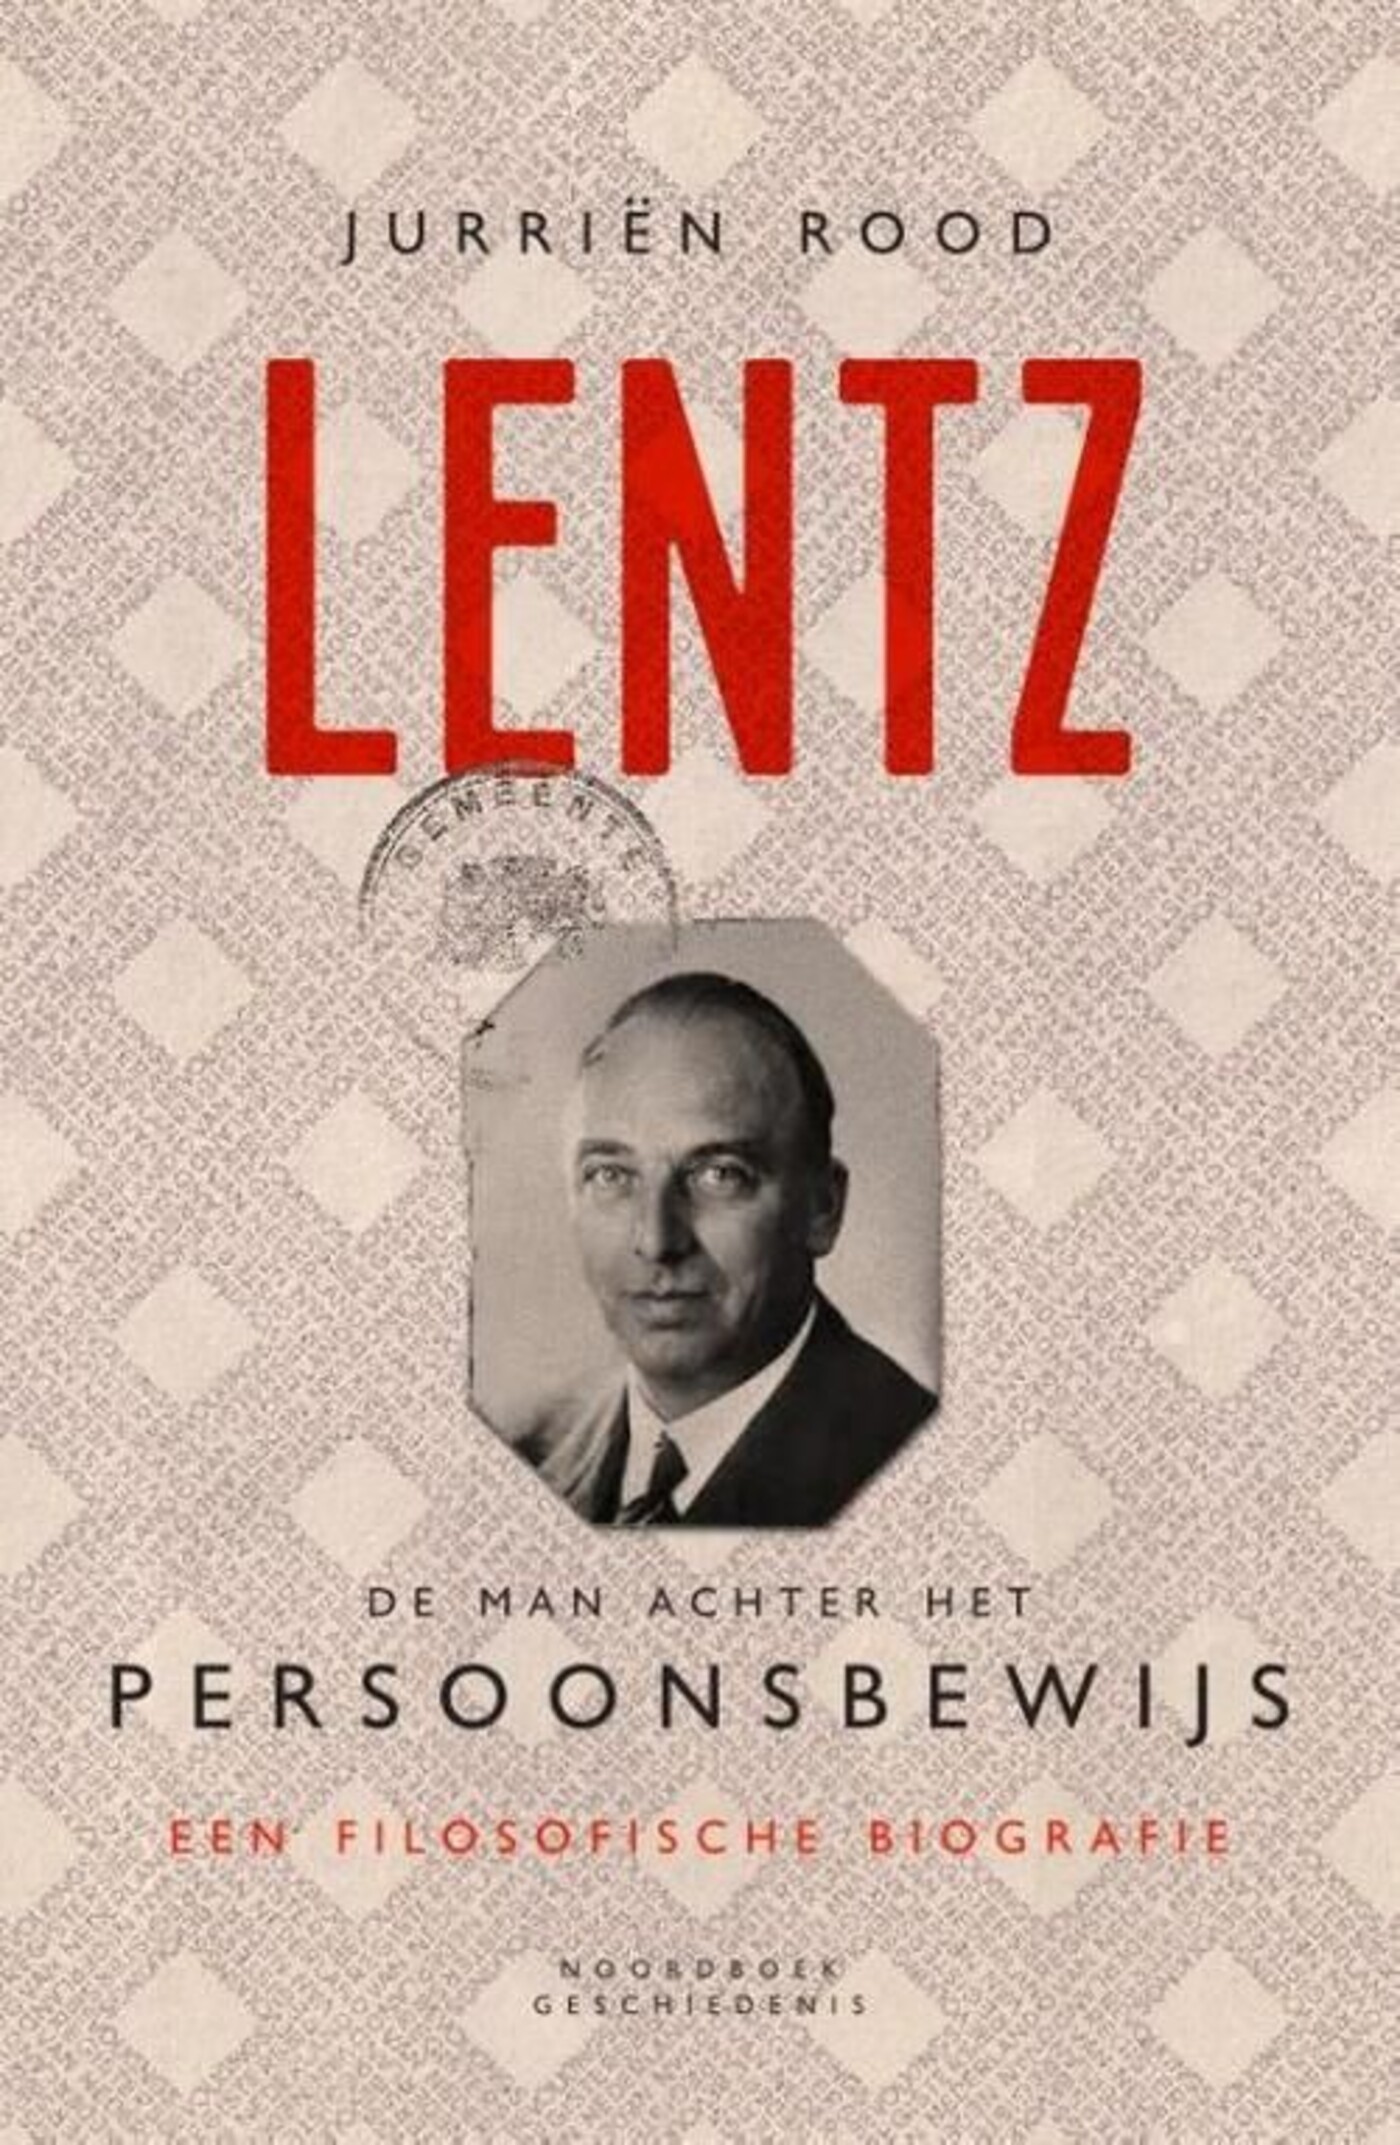 #1021 - 'Lentz: De man achter het persoonsbewijs'